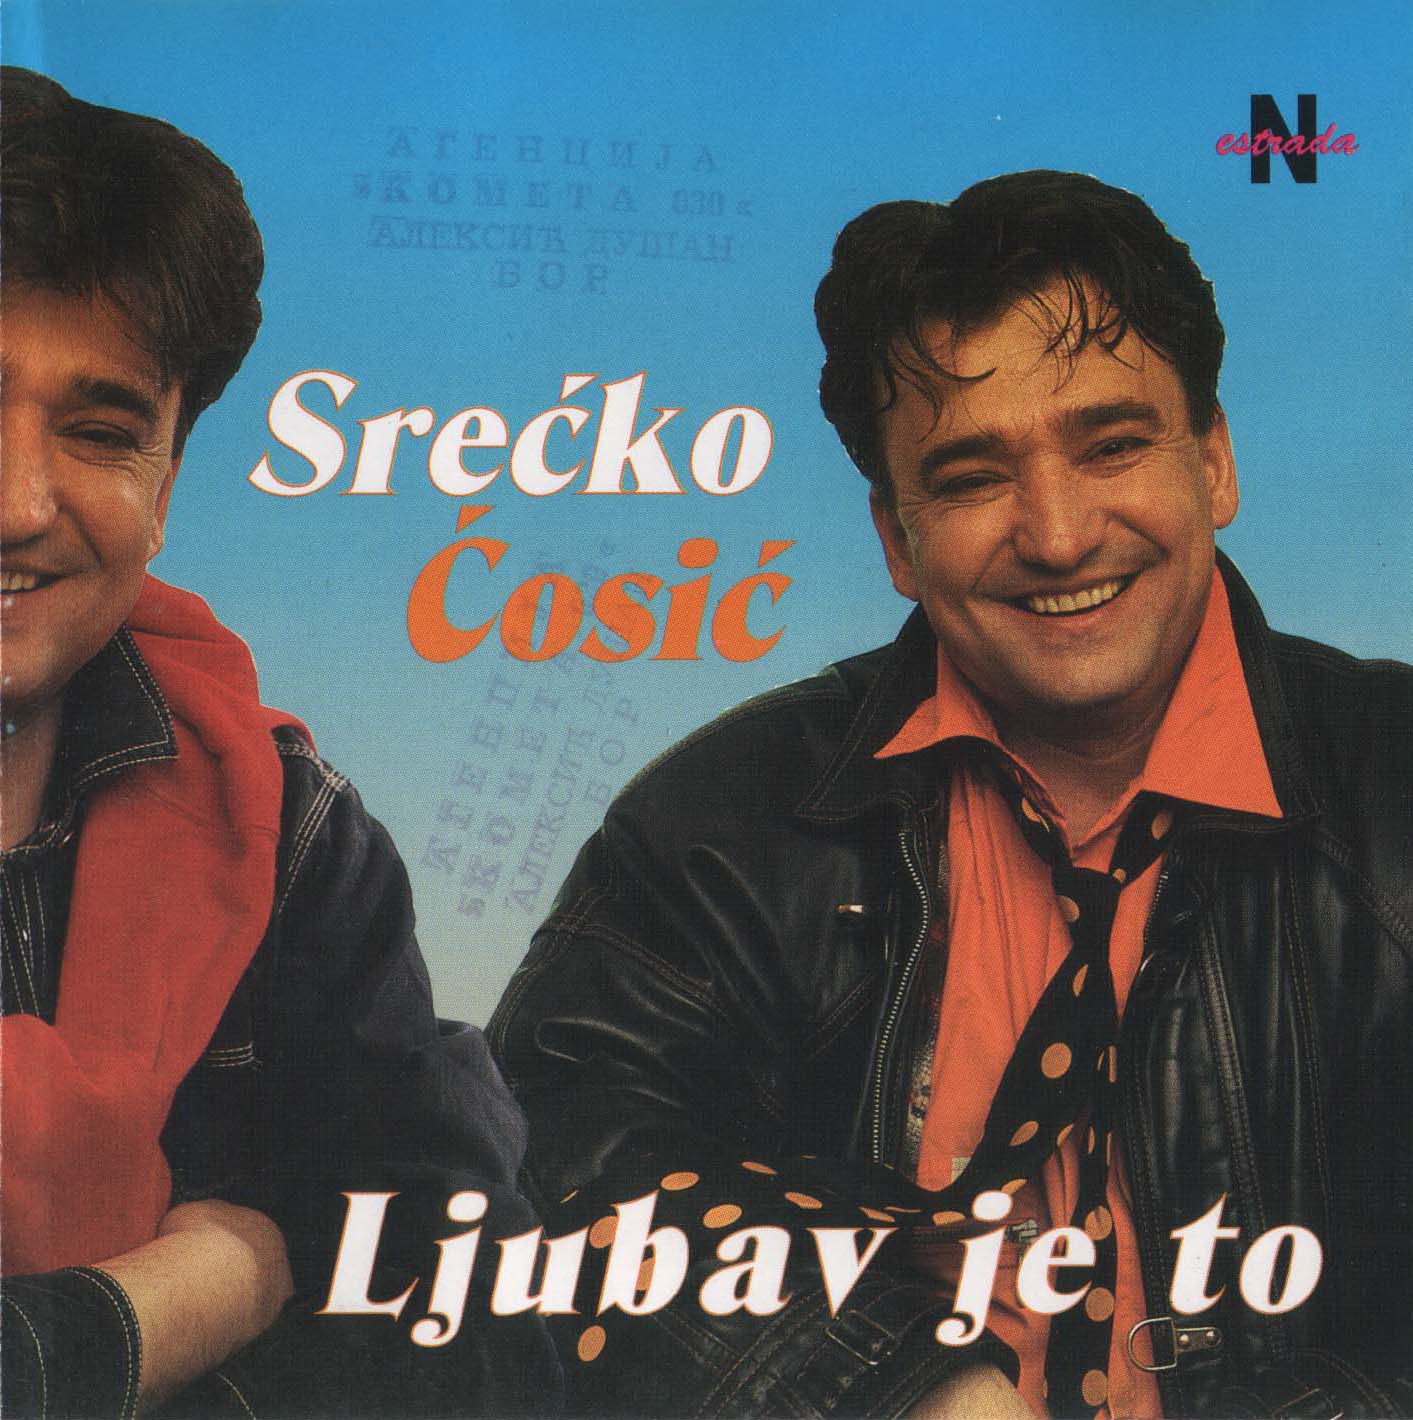 Srecko Cosic 1996 Prednja 1